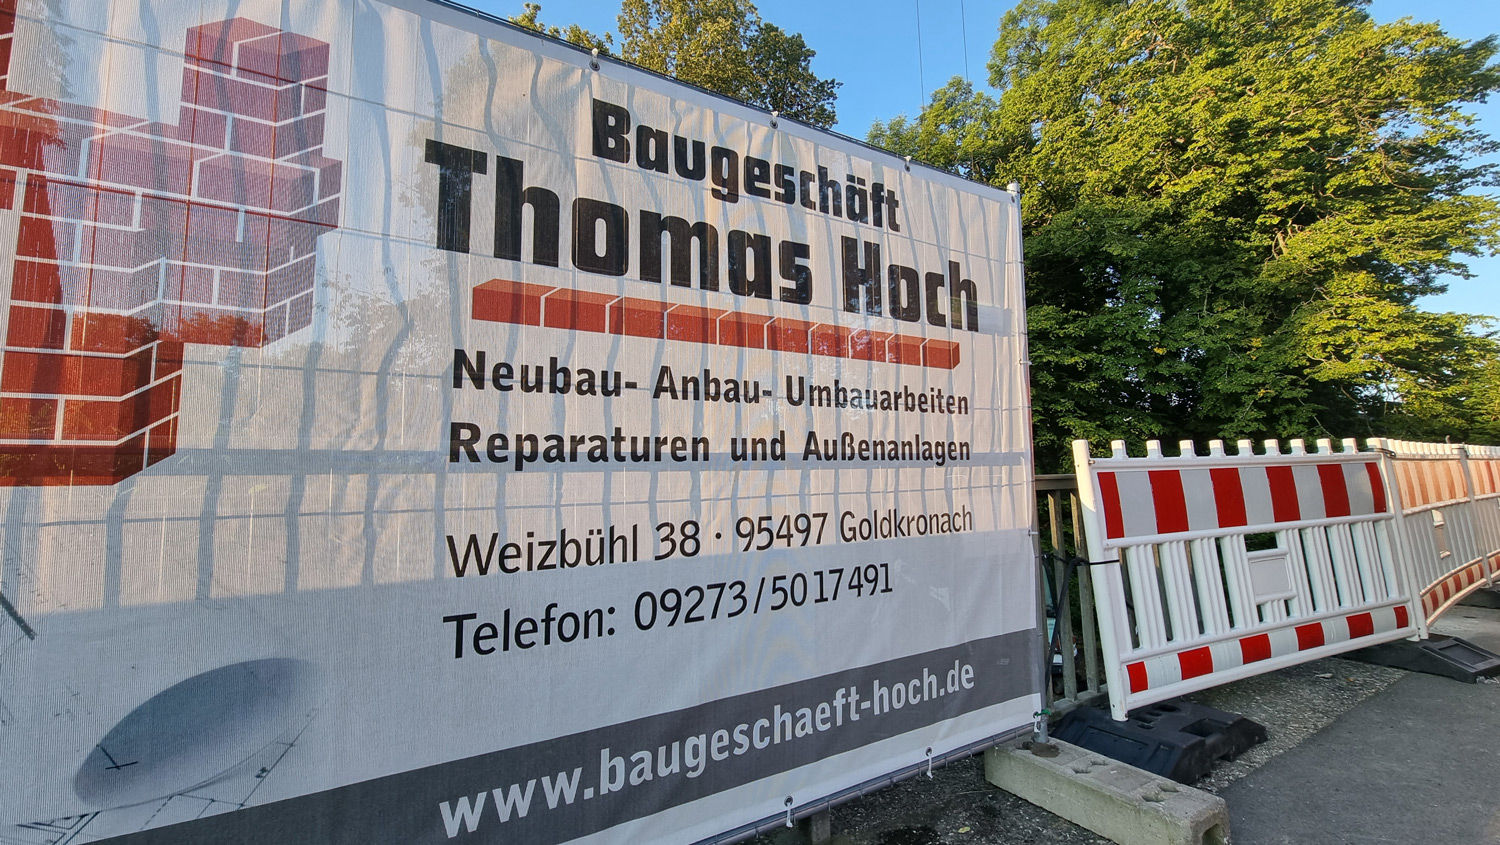 Baugeschäft Thomas Hoch e. K. aus Goldkronach bei Bayreuth